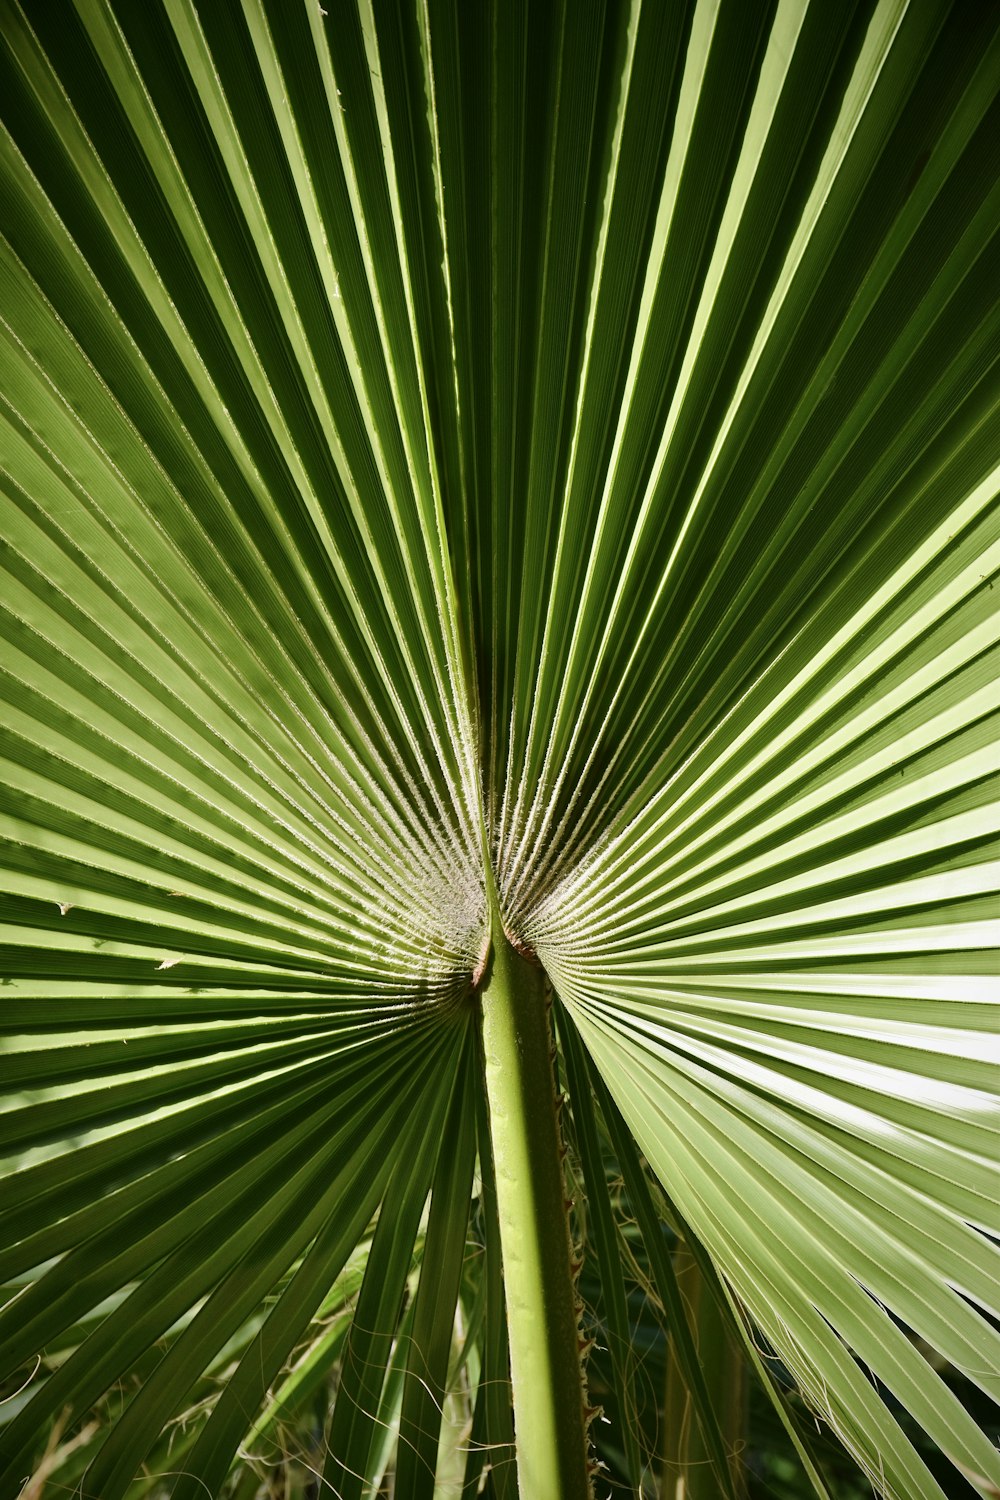 pianta di palma a ventaglio verde in fotografia ravvicinata